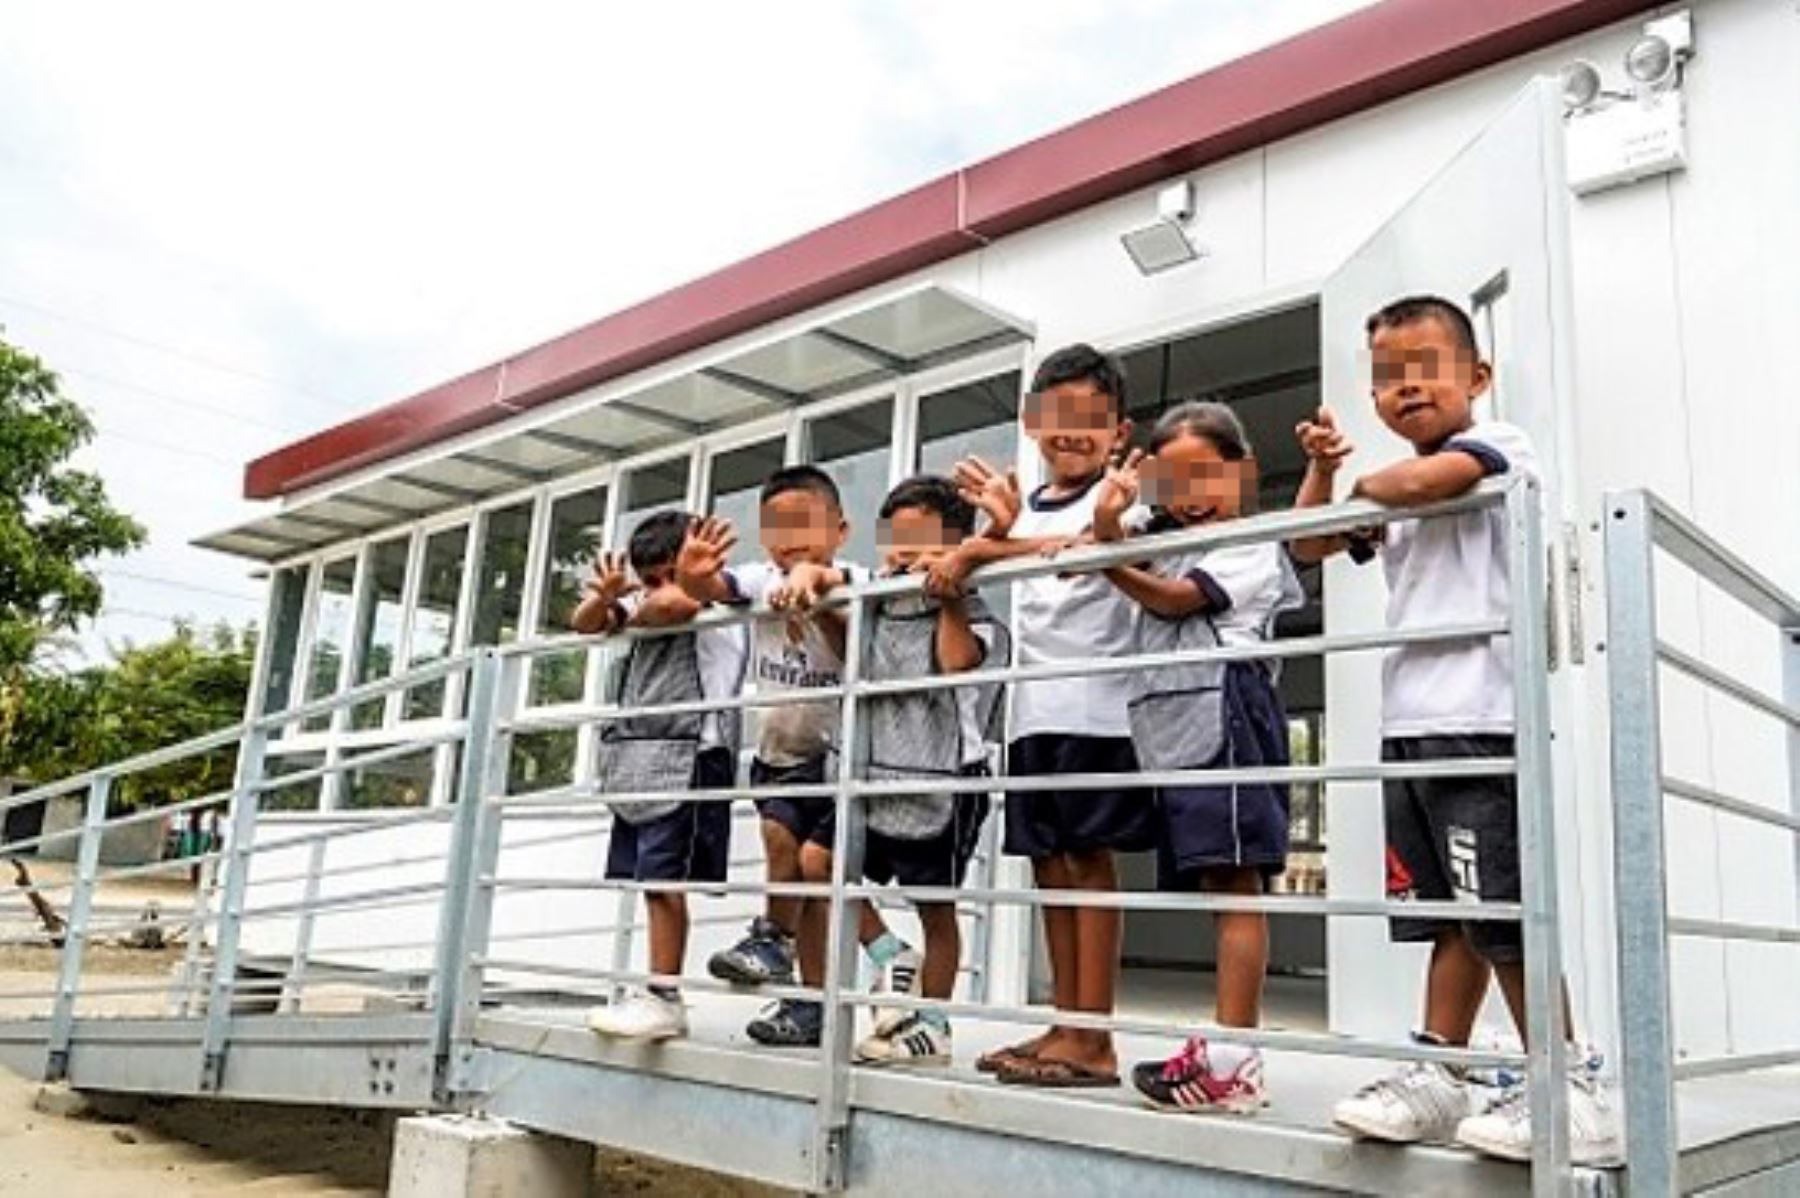 Aulas prefabricadas del tipo Costa beneficiarán a escolares de diversas regiones, informó el Pronied.